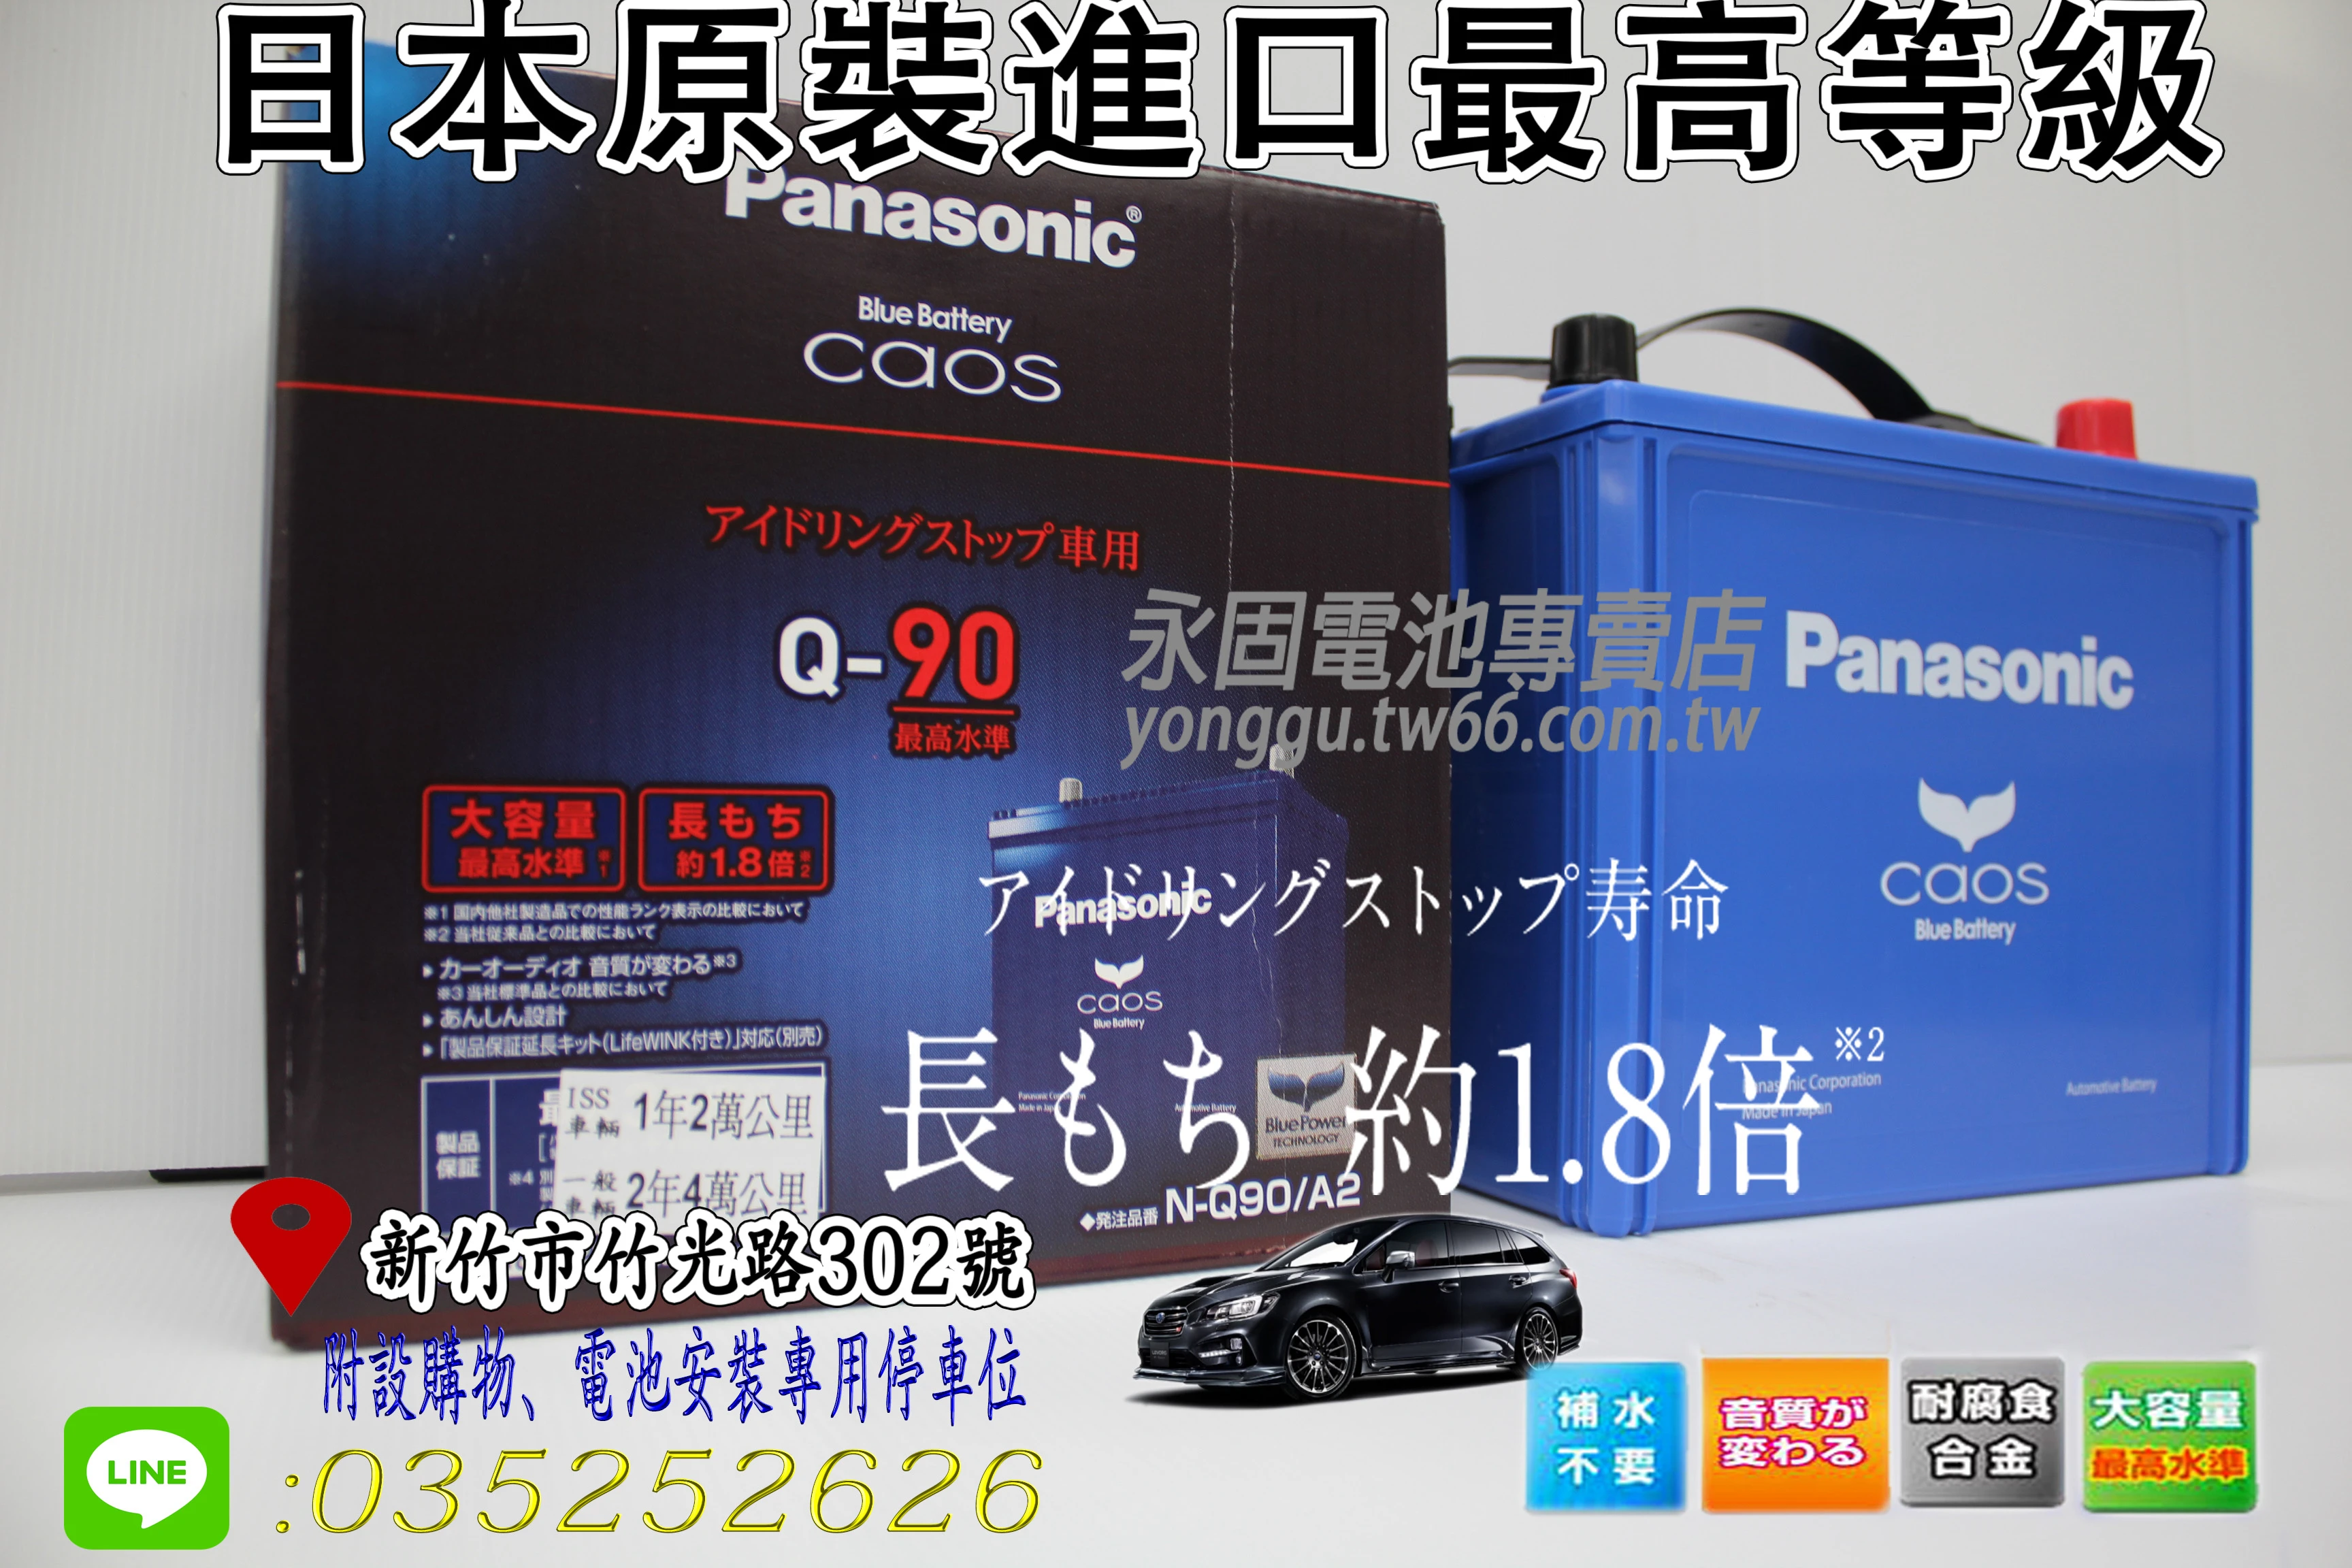 Panasonic Caos Q90新竹永固電池